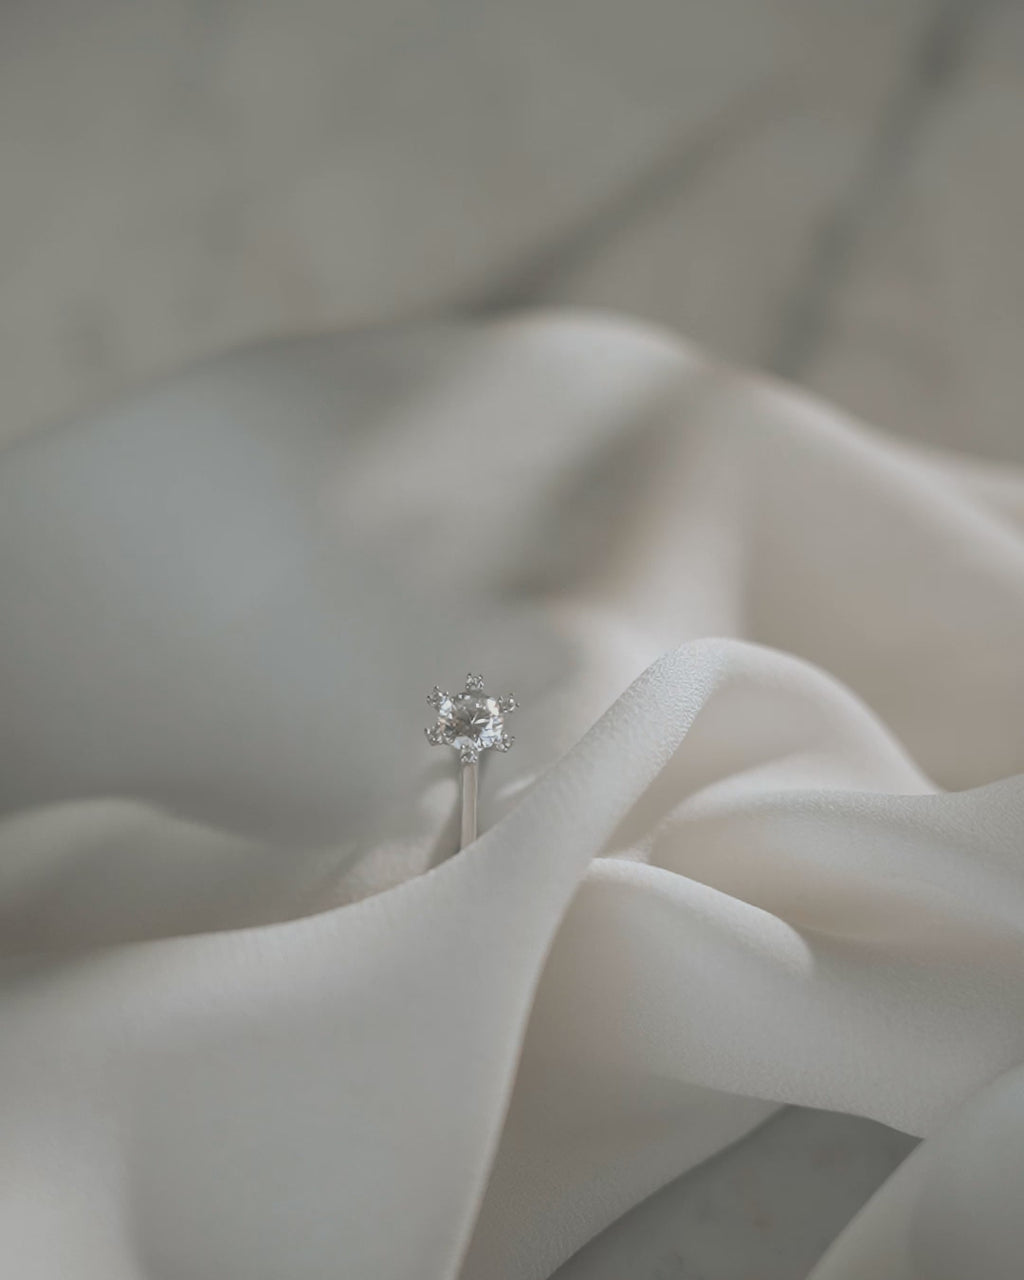 Μονόπετρο δαχτυλίδι γάμου με κεντρικό διαμάντι και πέτρες brilliant περιμετρικά κατασκευασμένο από λευκόχρυσο, επάνω σε λευκό μετάξι.